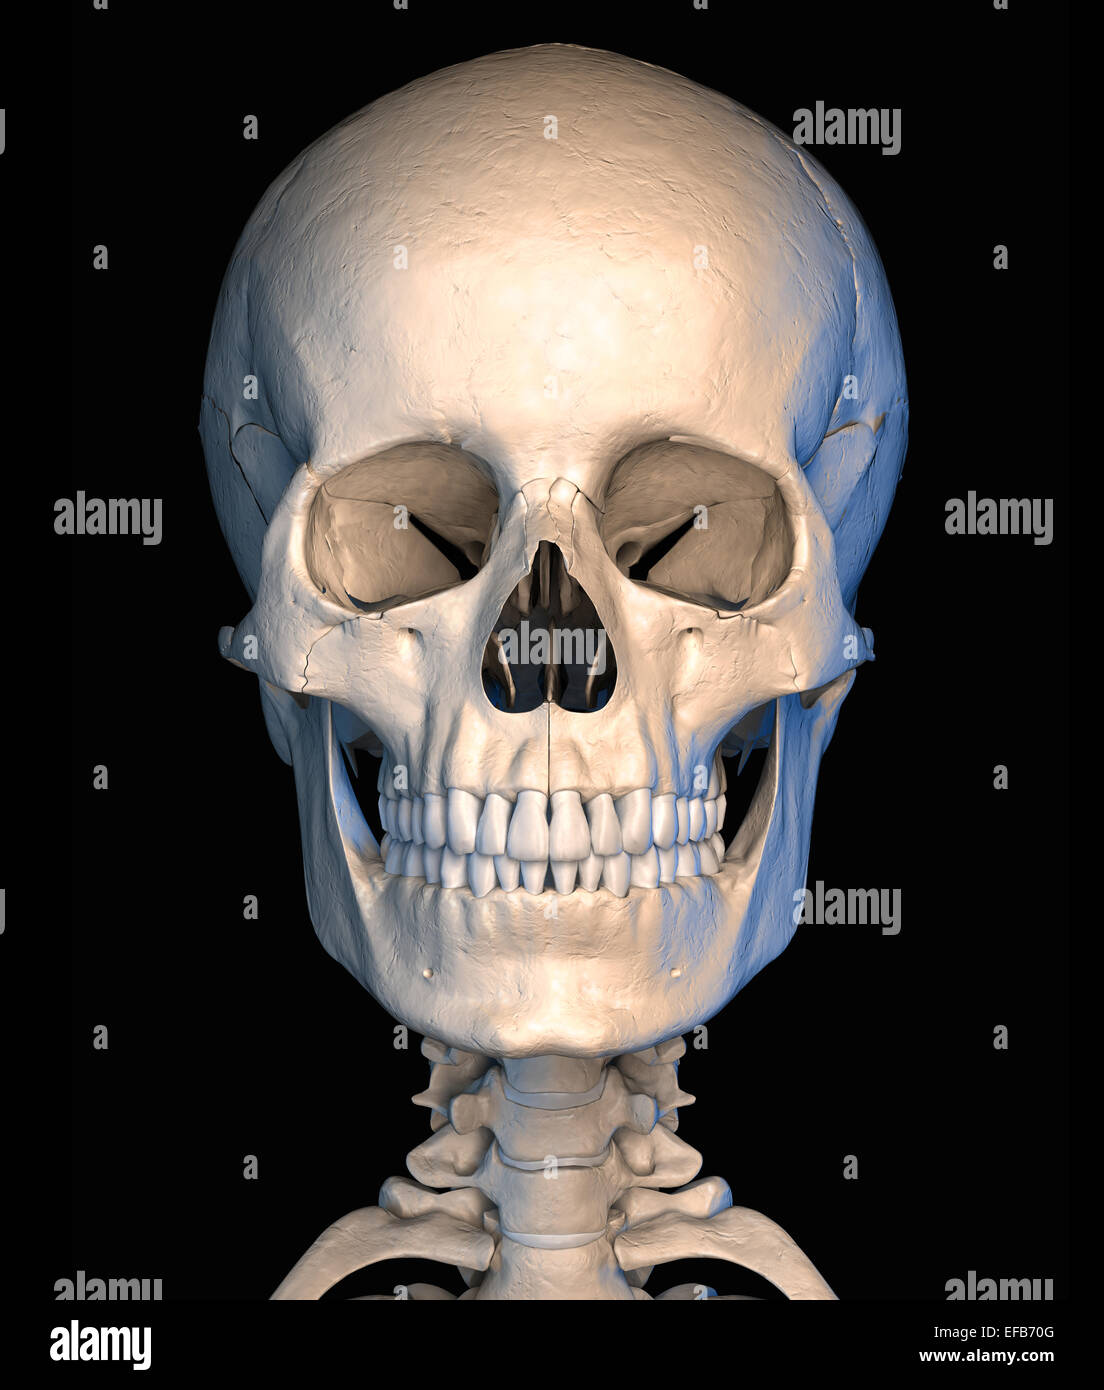 Très détaillé et scientifiquement correctes, crâne humain, vue de face, sur fond noir. Anatomie de l'image. Chemin de détourage inclus. Banque D'Images